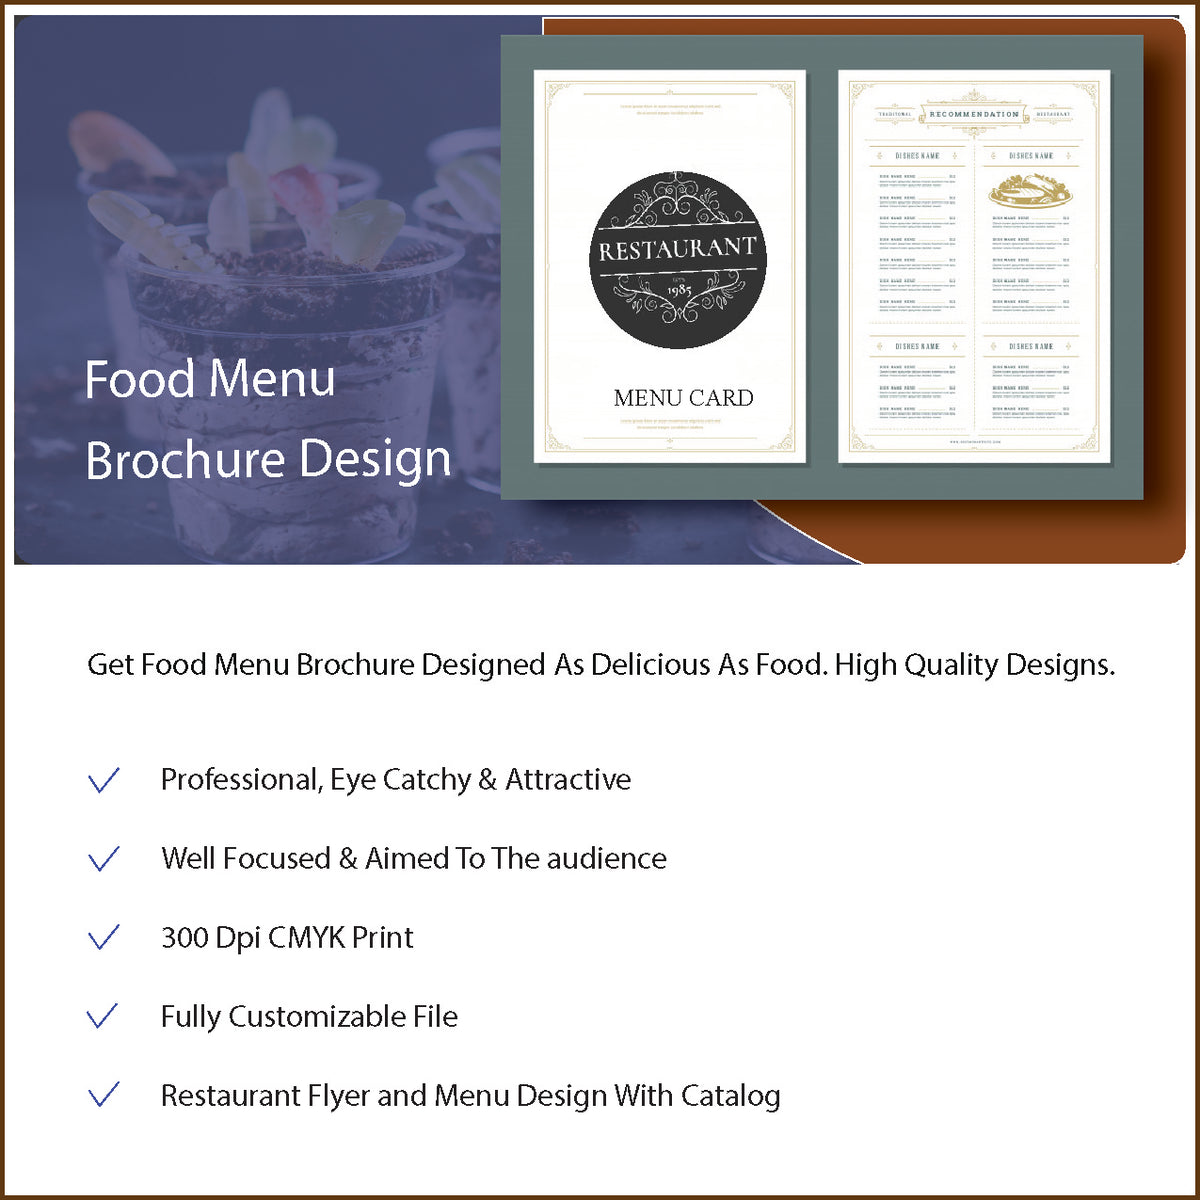 Food Menu Brochure Design